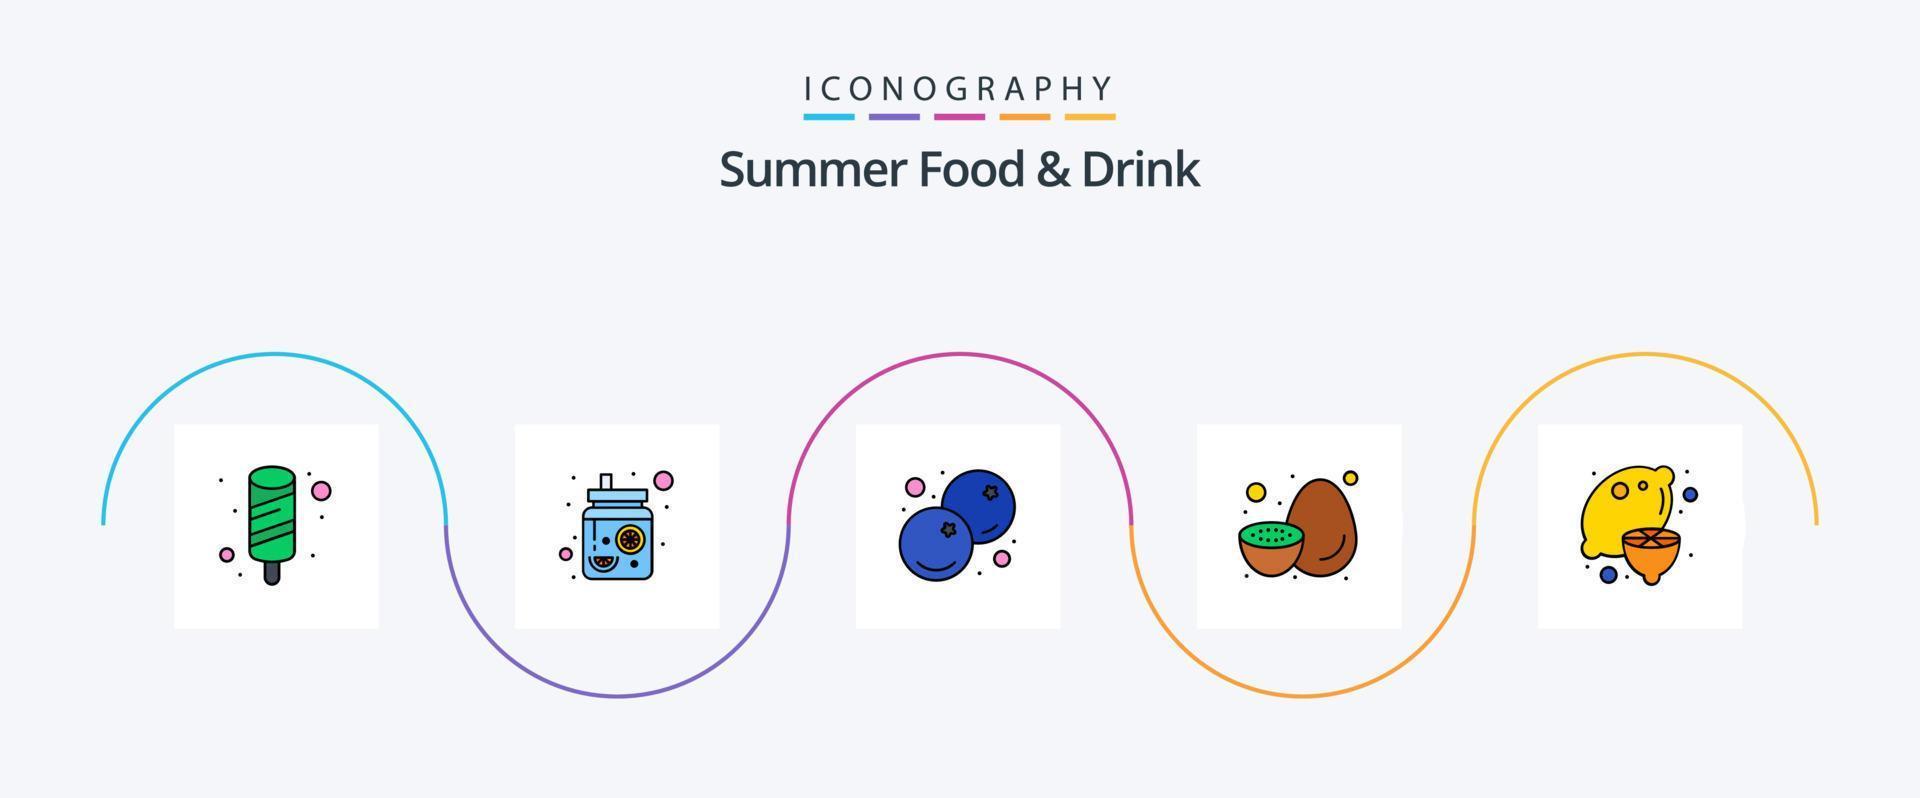 la línea de alimentos y bebidas de verano llenó el paquete de iconos planos 5 que incluye saludable. kiwi. azul. saludable. Fruta vector